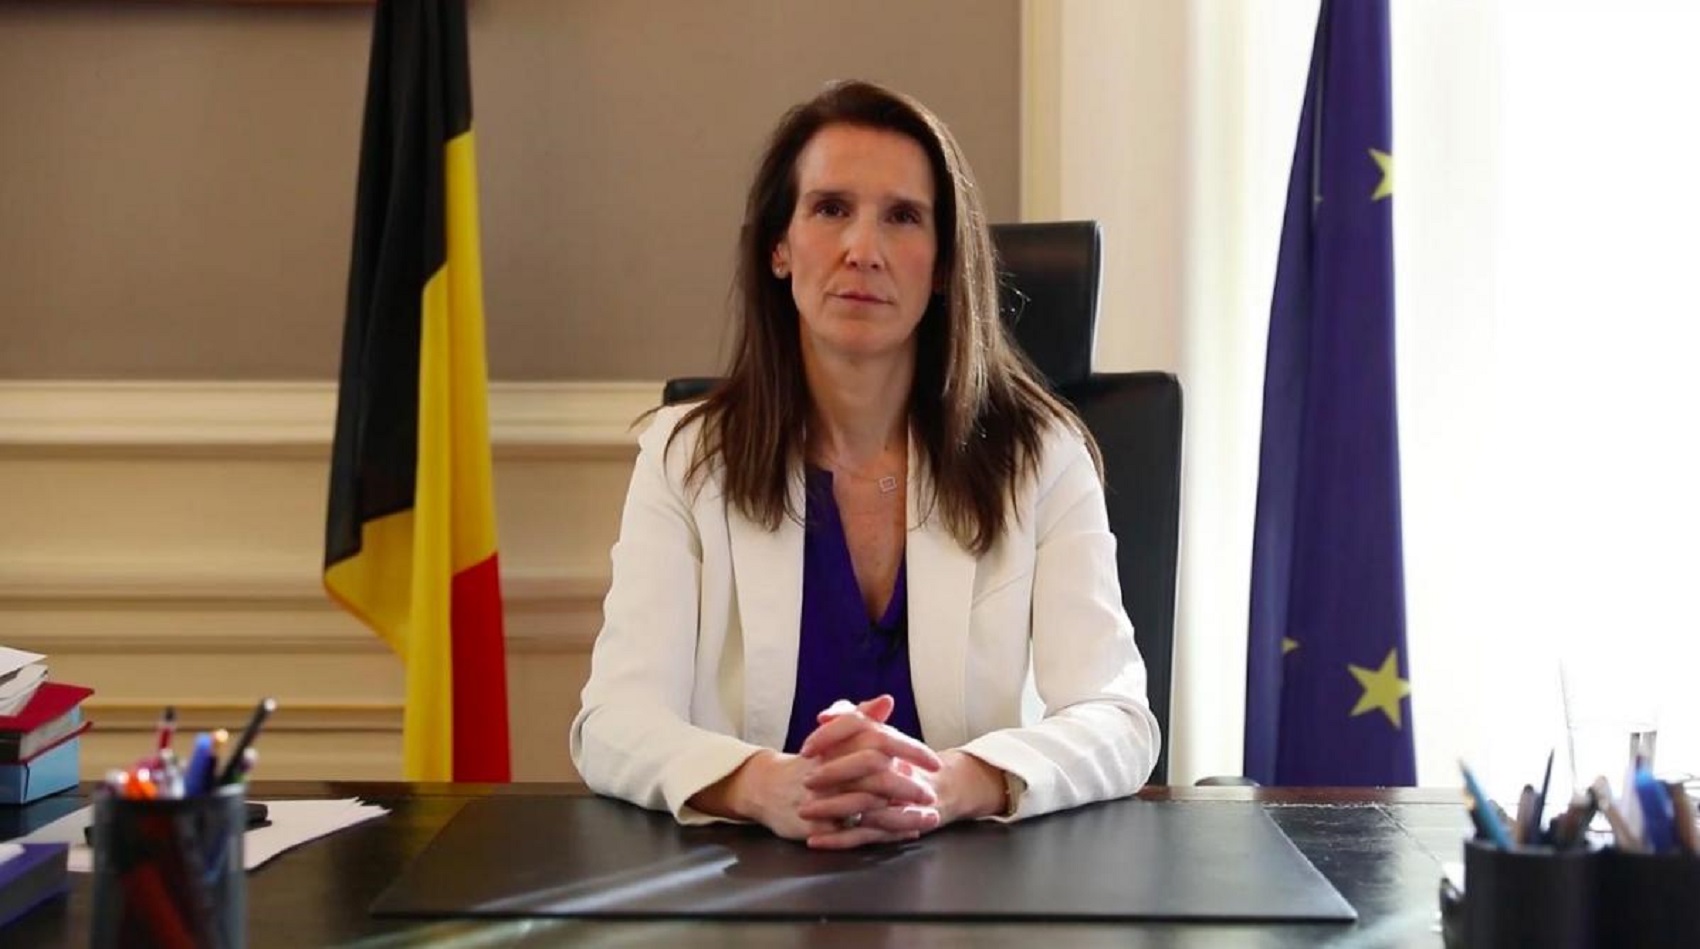 Bizonyítványát dicséri a belga ügyvivő kormány